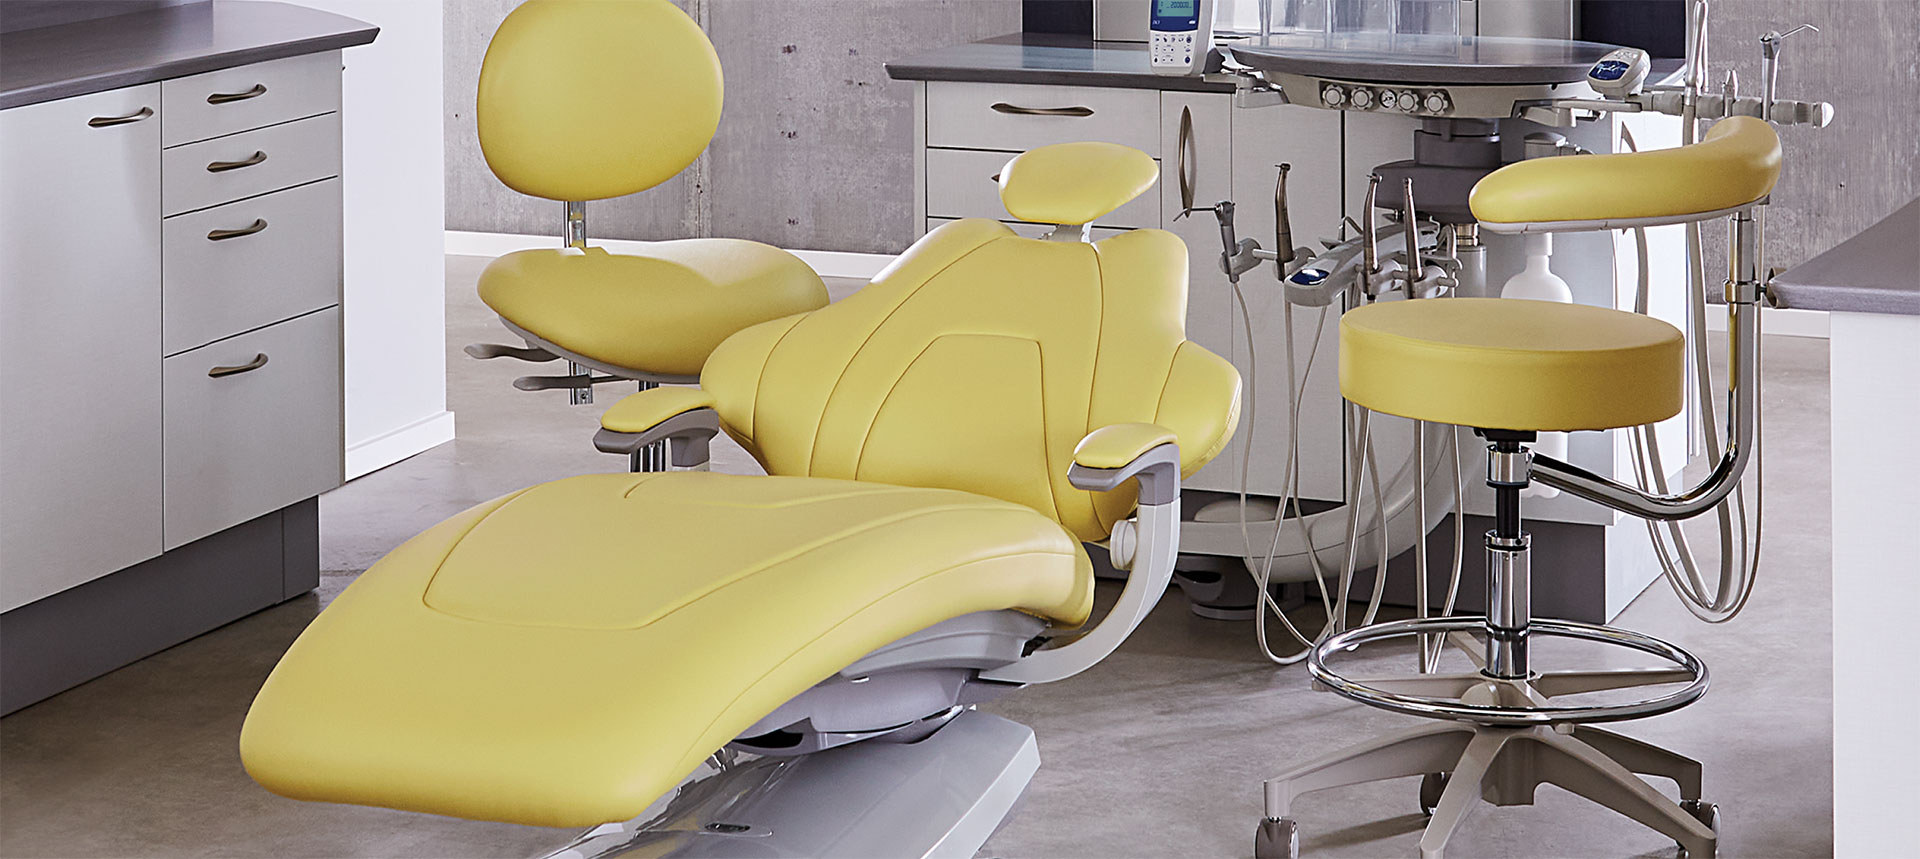 DCI Edge Series 5 Dental Chair